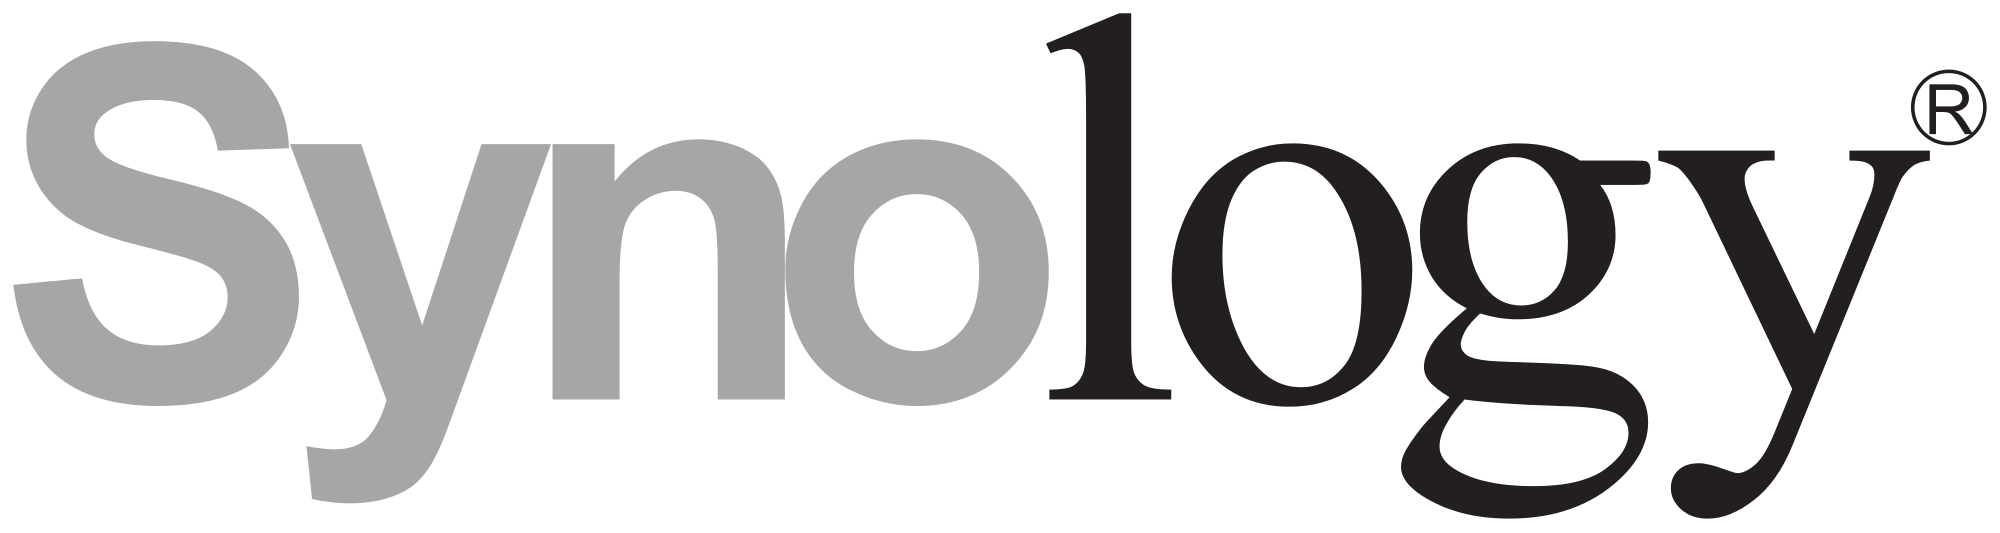 senior software developer logo